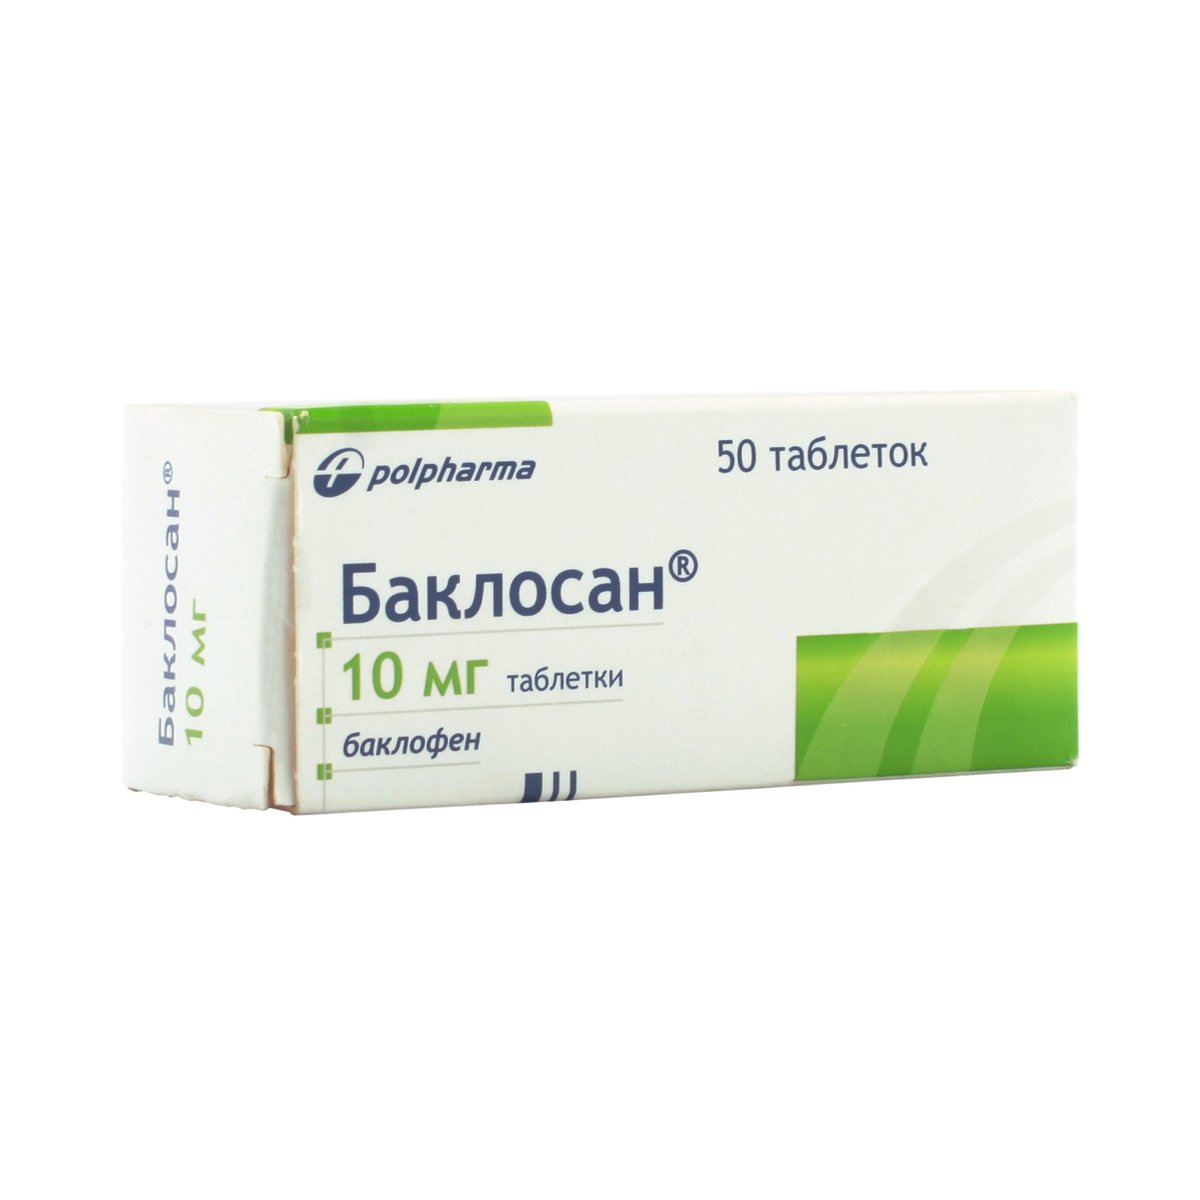 Баклосан (таблетки, 50 шт, 10 мг) - цена,  онлайн  .